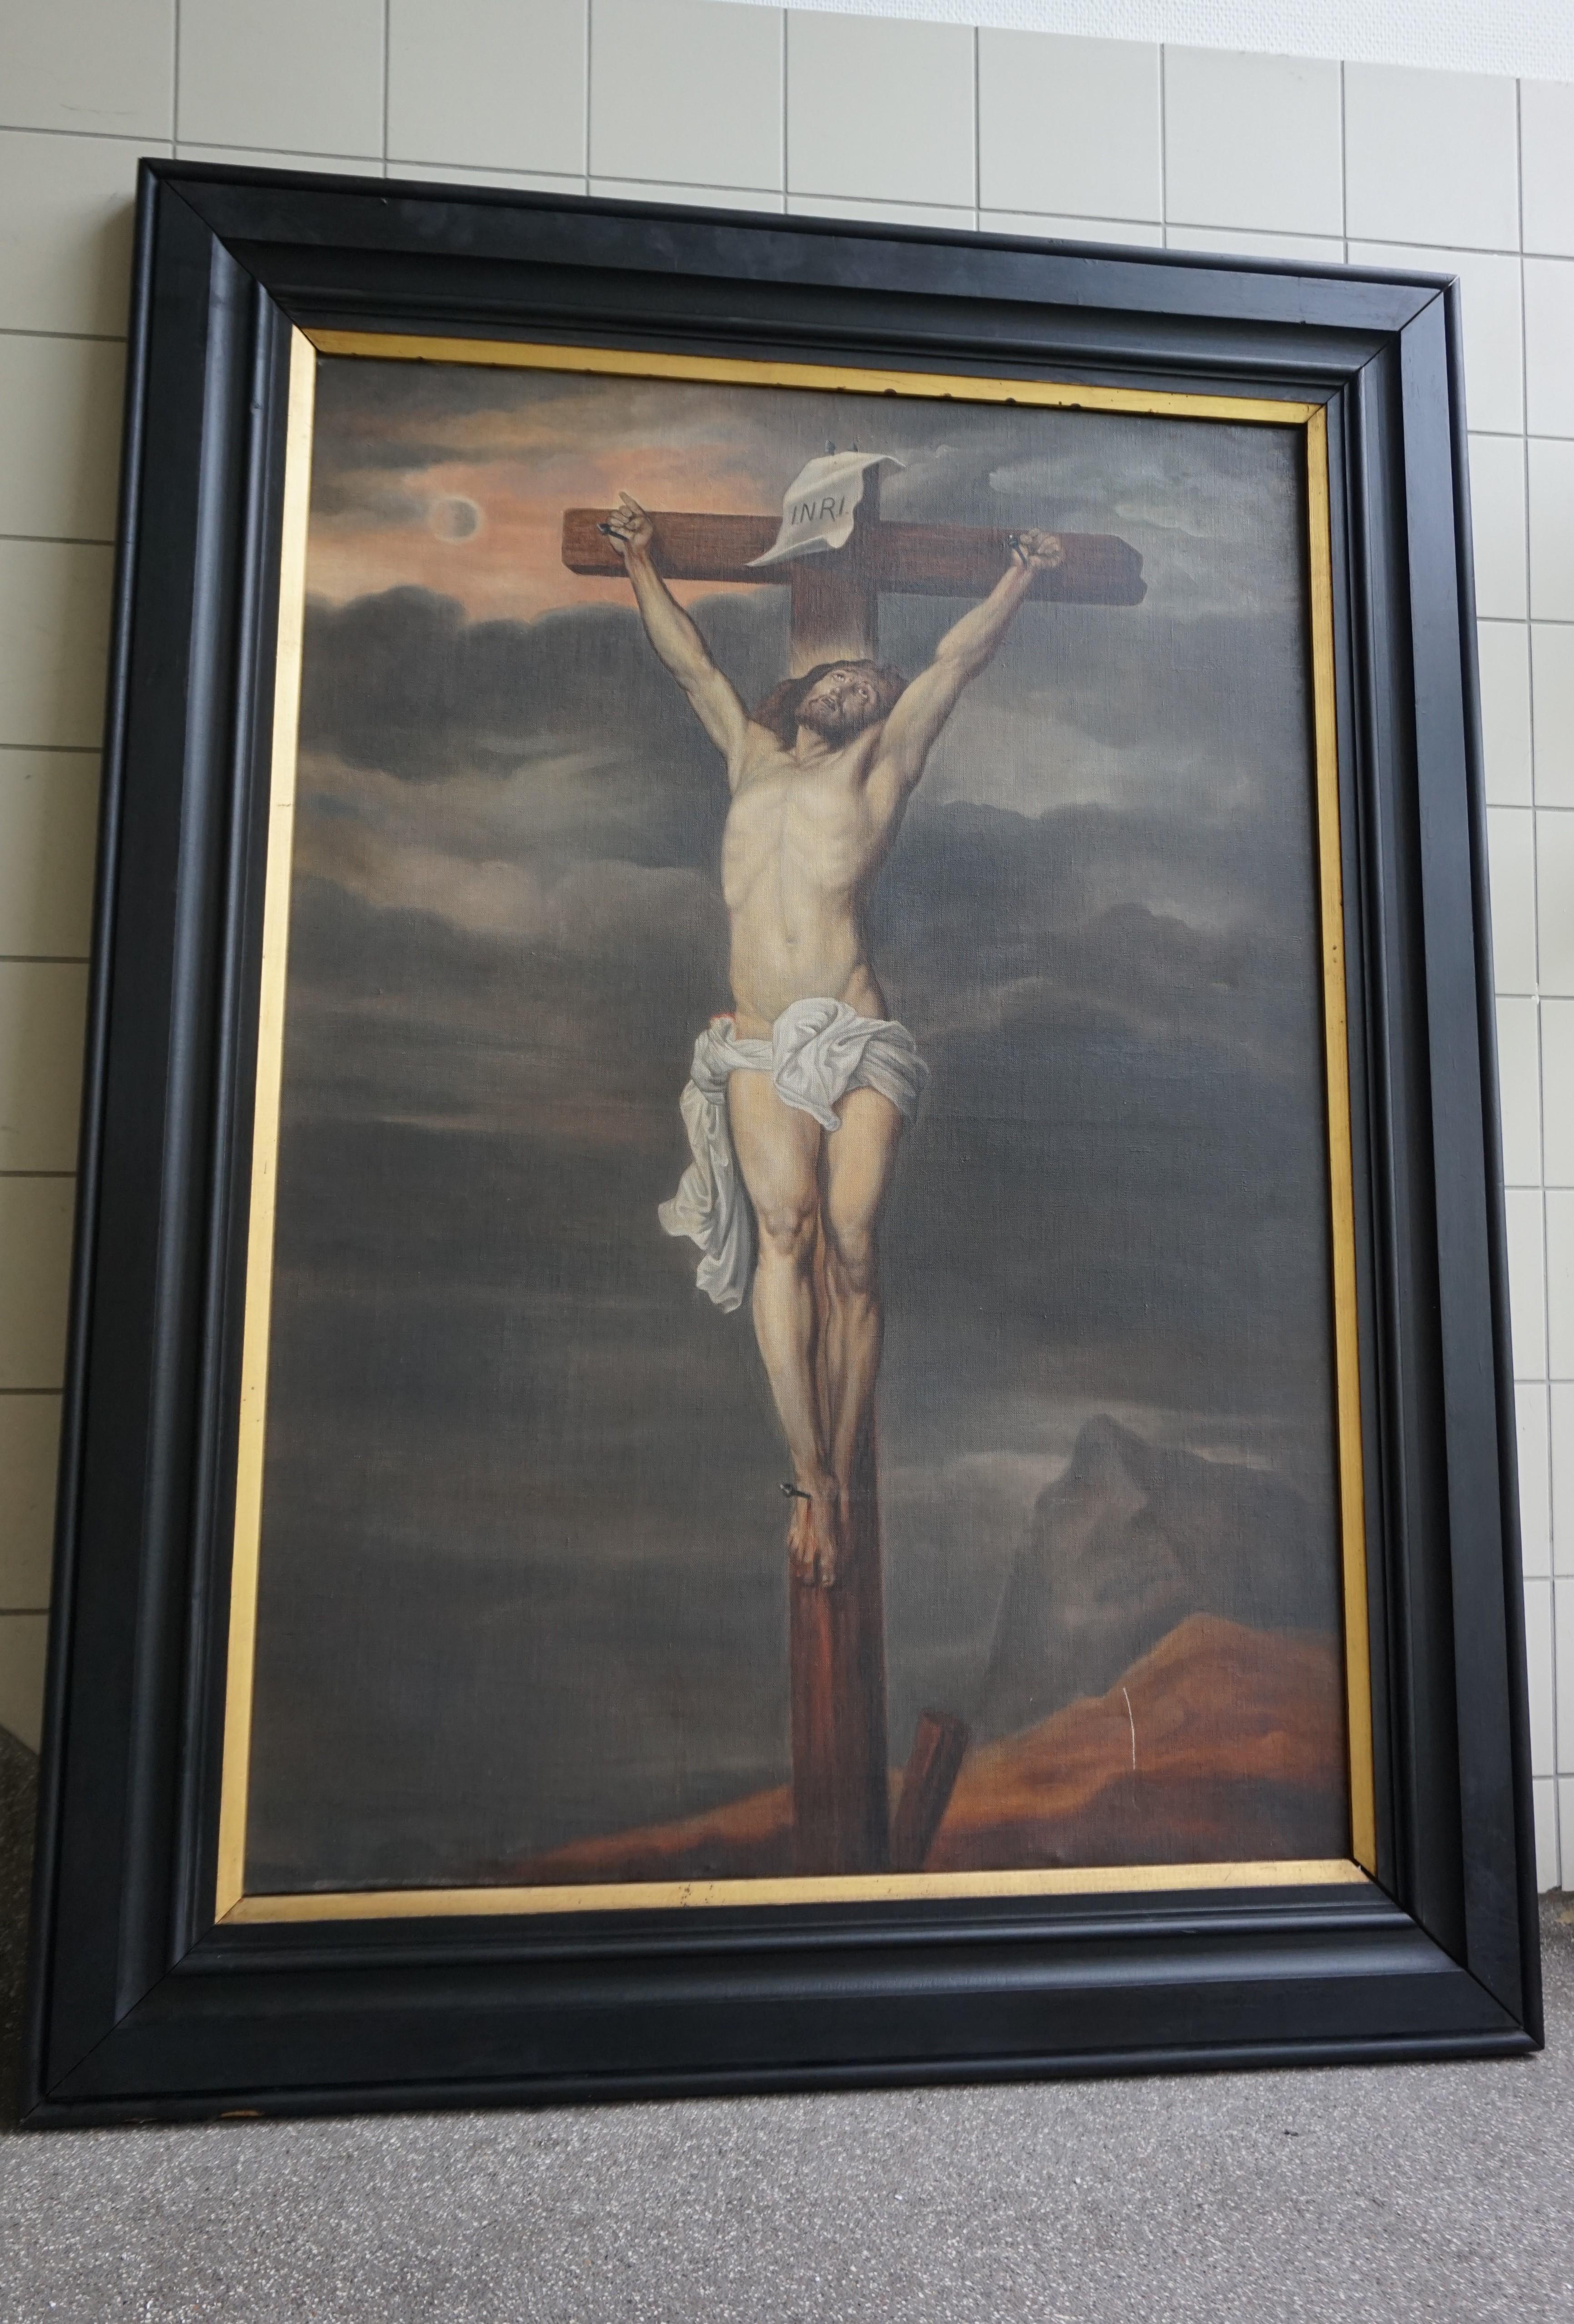 Merveilleuse œuvre d'art religieux.

Cette peinture impressionnante et de grande taille du Christ sur la croix est un spectacle impressionnant à voir, et ce pour plus d'une raison. Le corps pâle du Christ, incroyablement bien peint, contraste